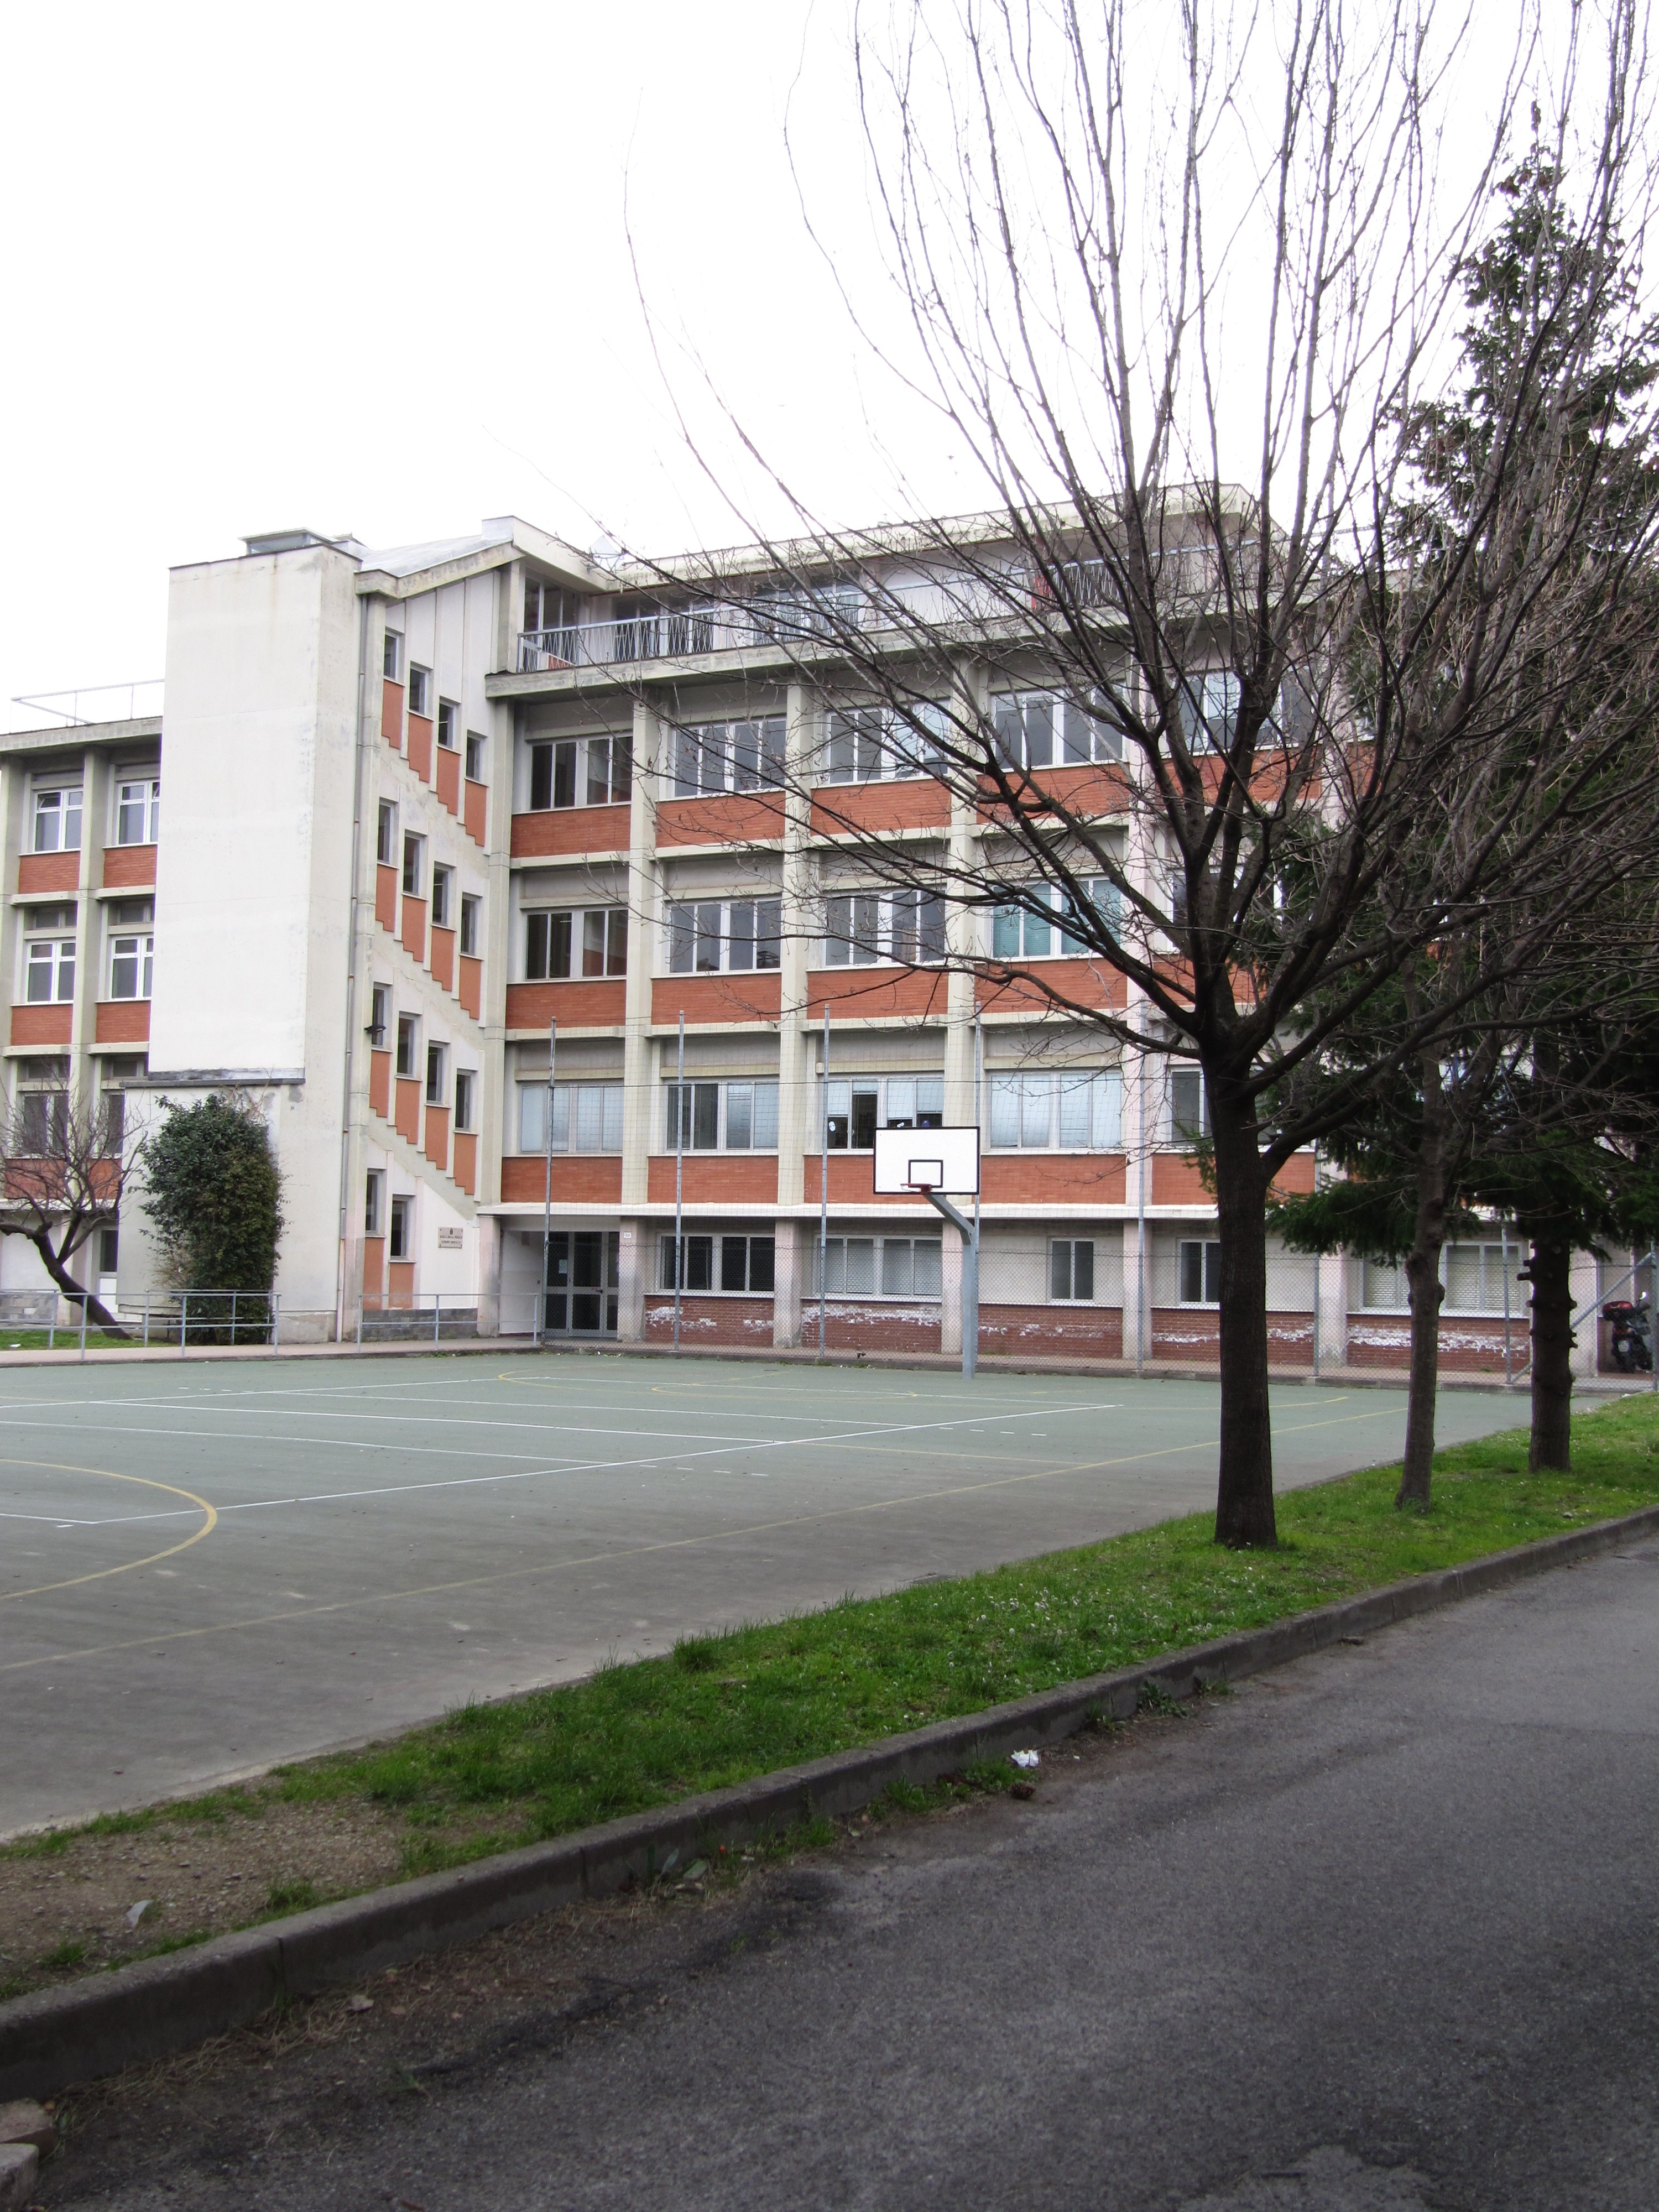 La scuola media Descalzo, in via Val Di Canepa 